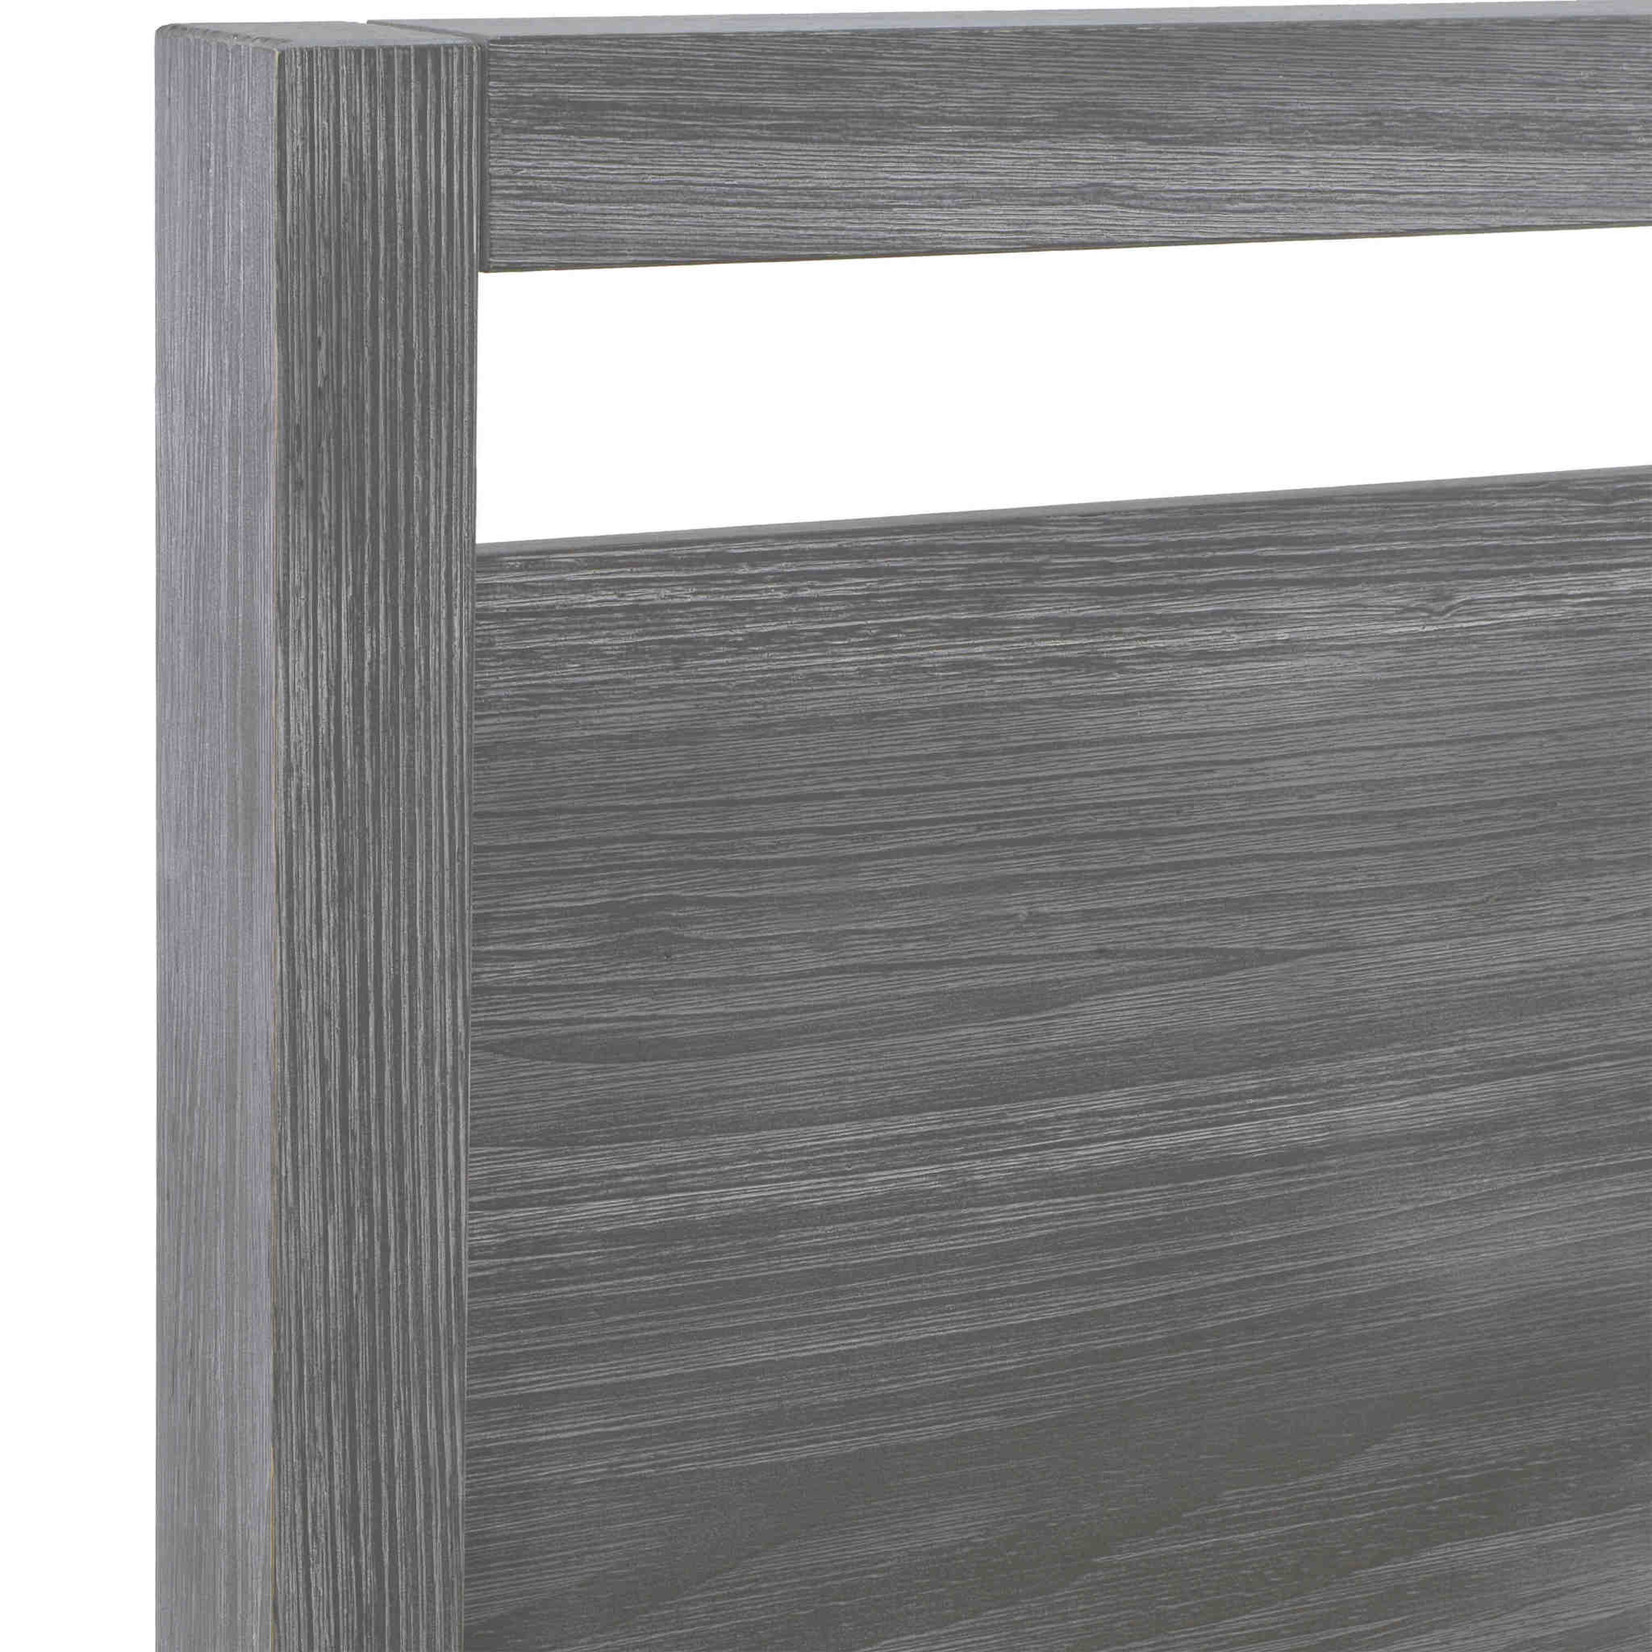 Loft King Platform Bed - Solid Wood - Brushed Grey